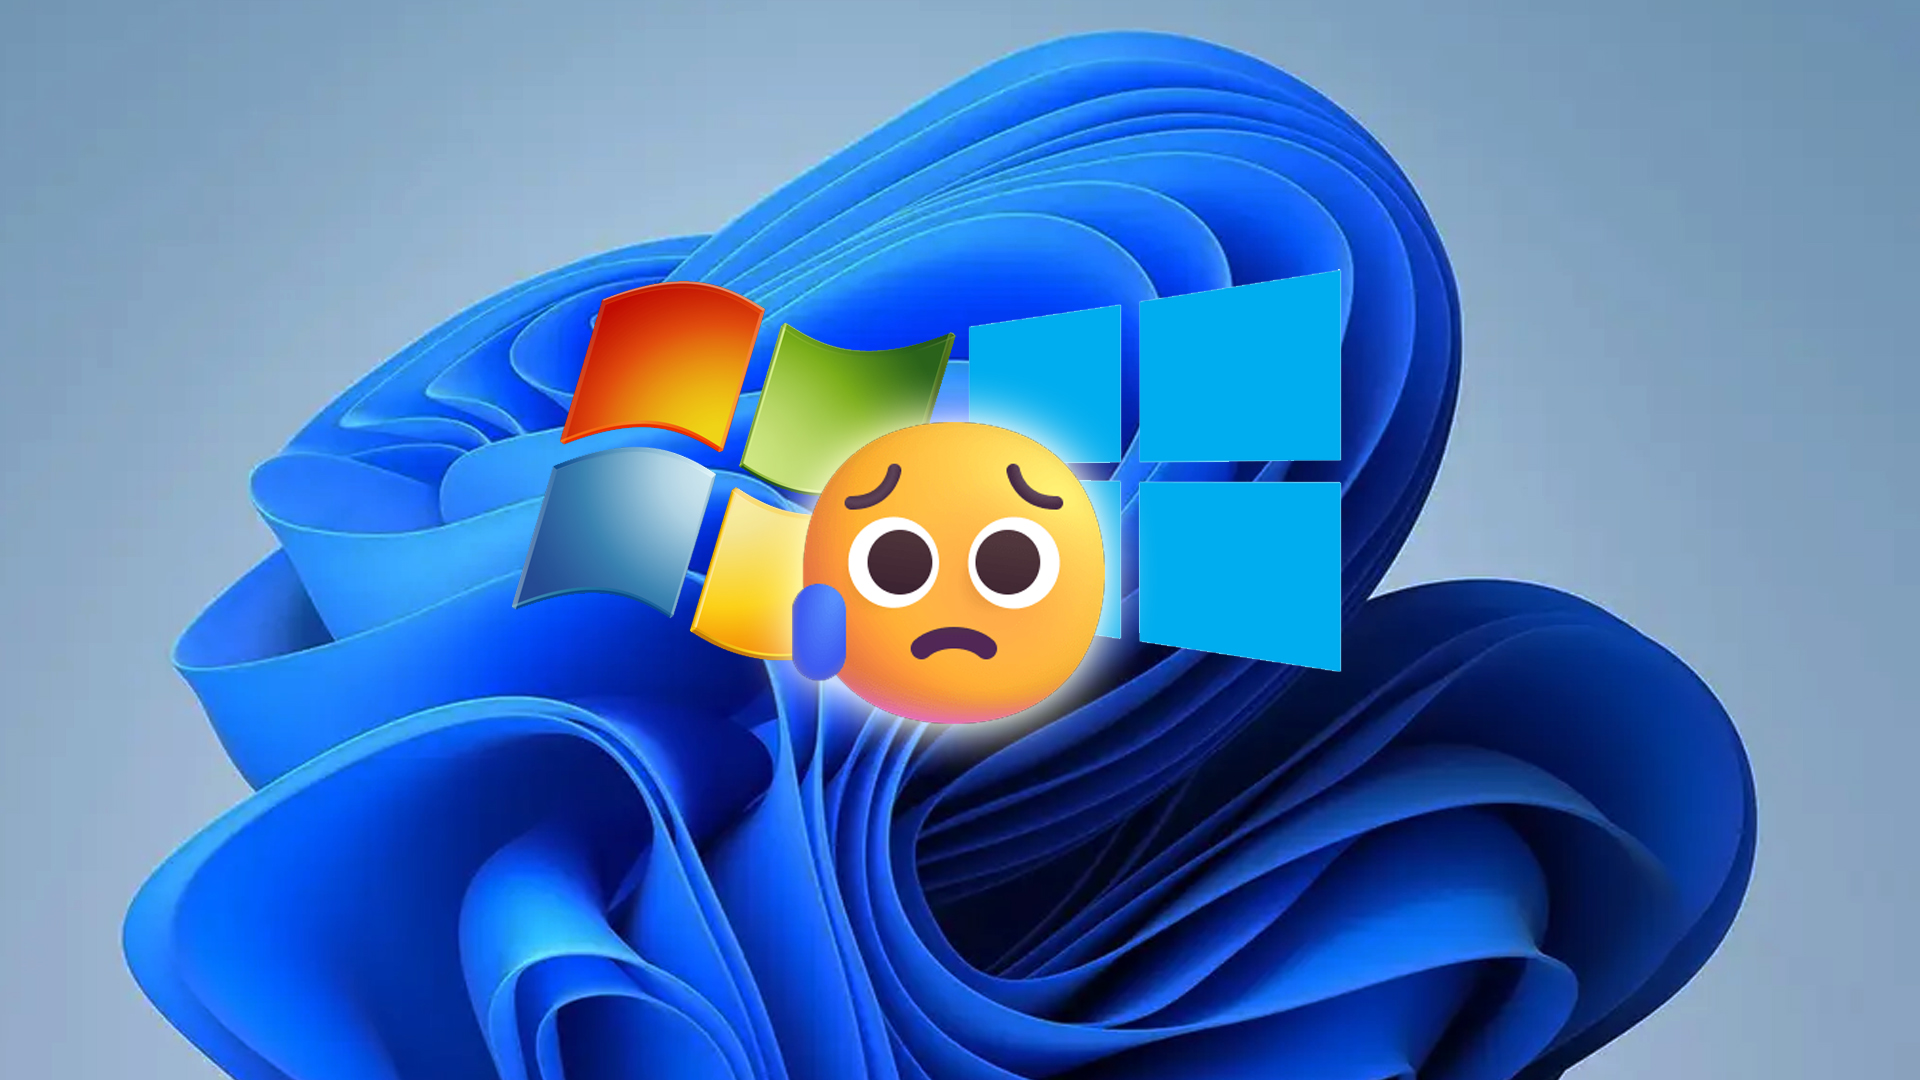 Geen gratis upgrades meer voor Windows 7- en 8-gebruikers, zegt Microsoft